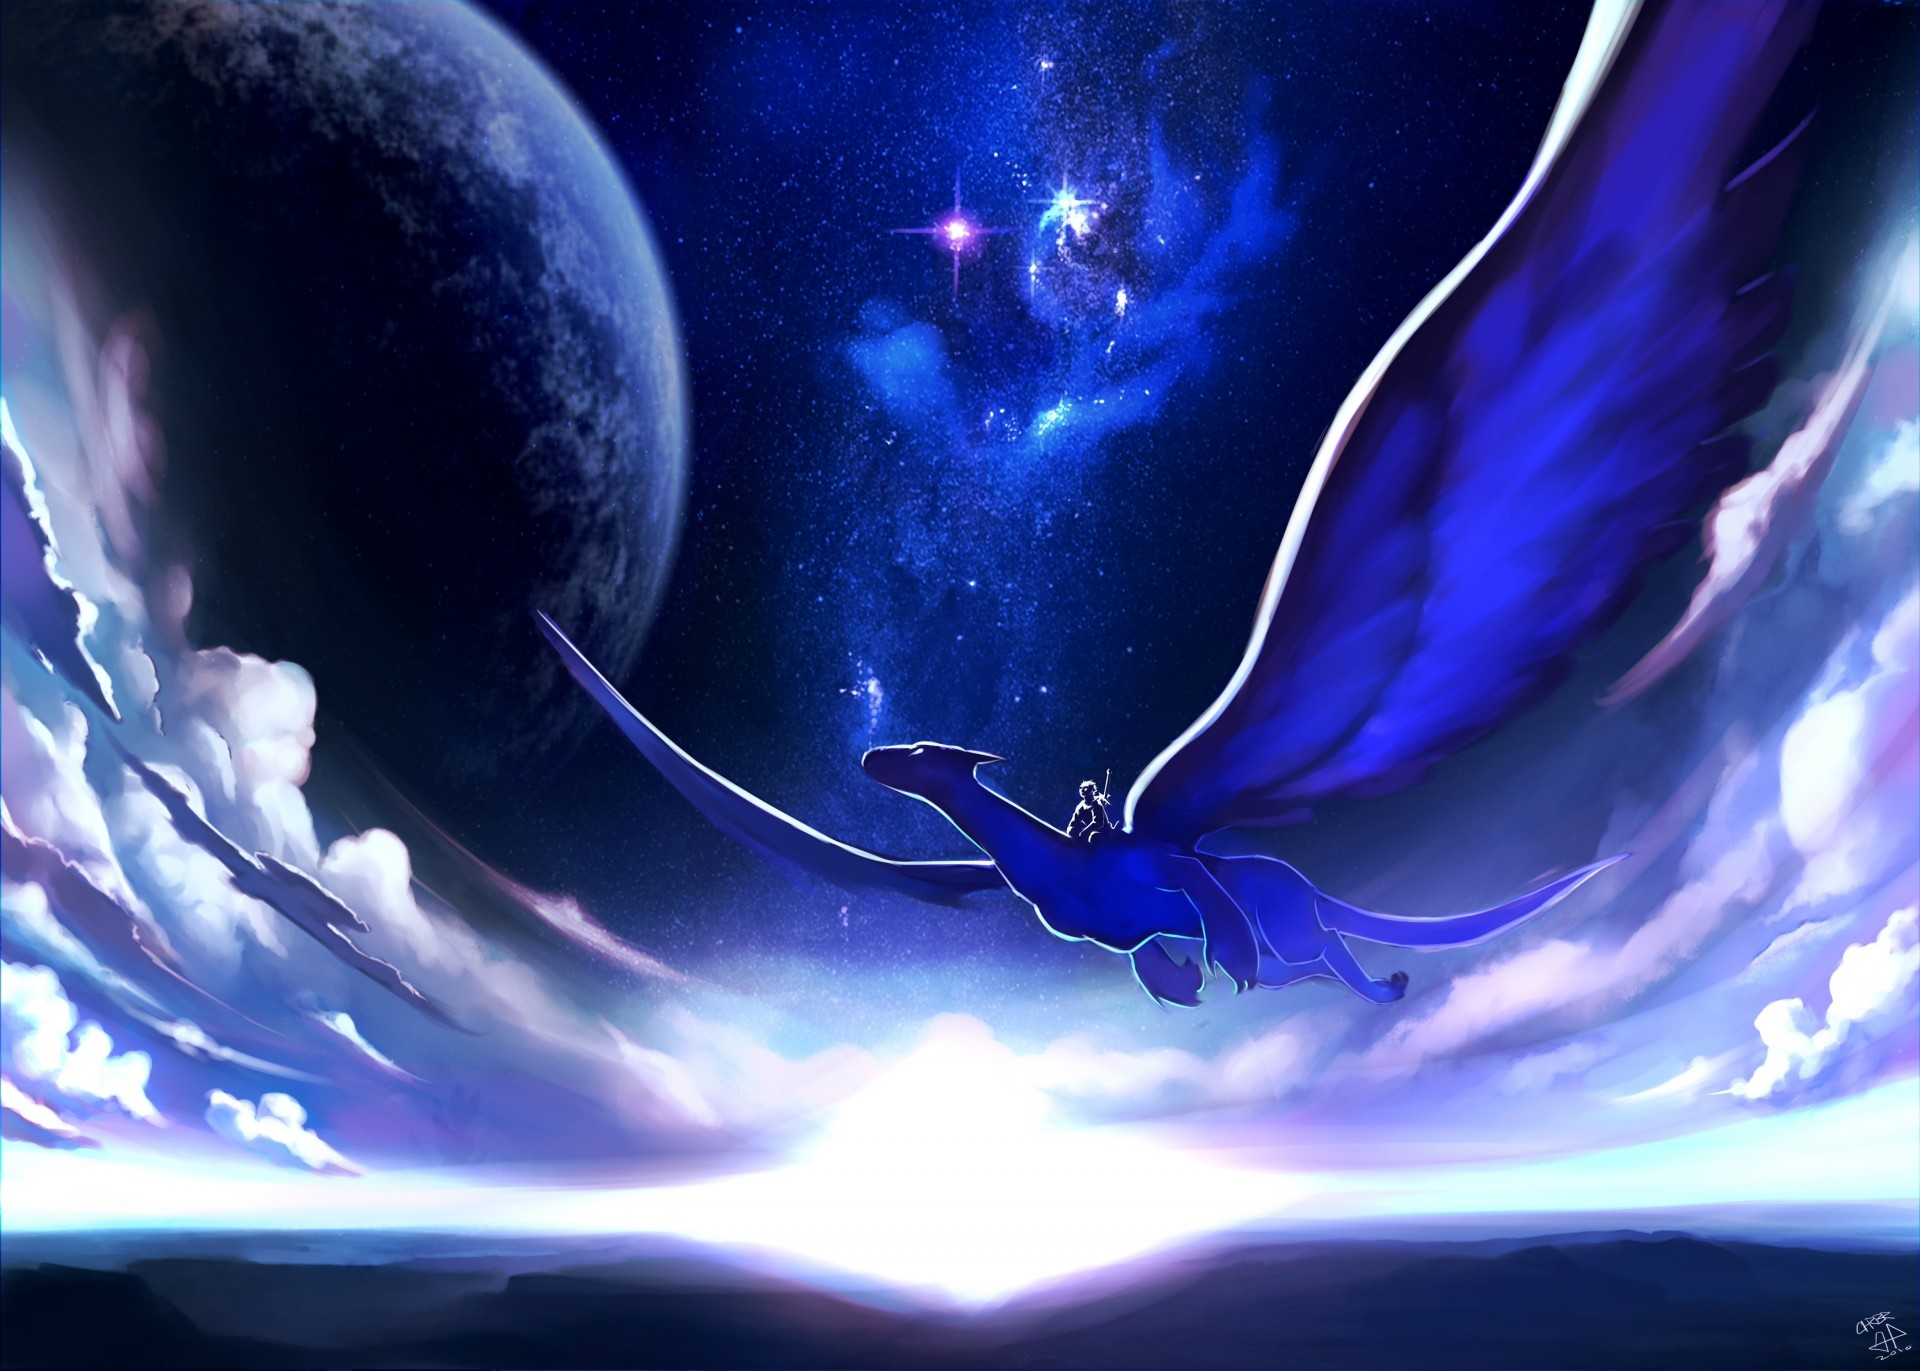 Арт изображение ночного неба с луной и летящим драконом Обои на рабочий сто...